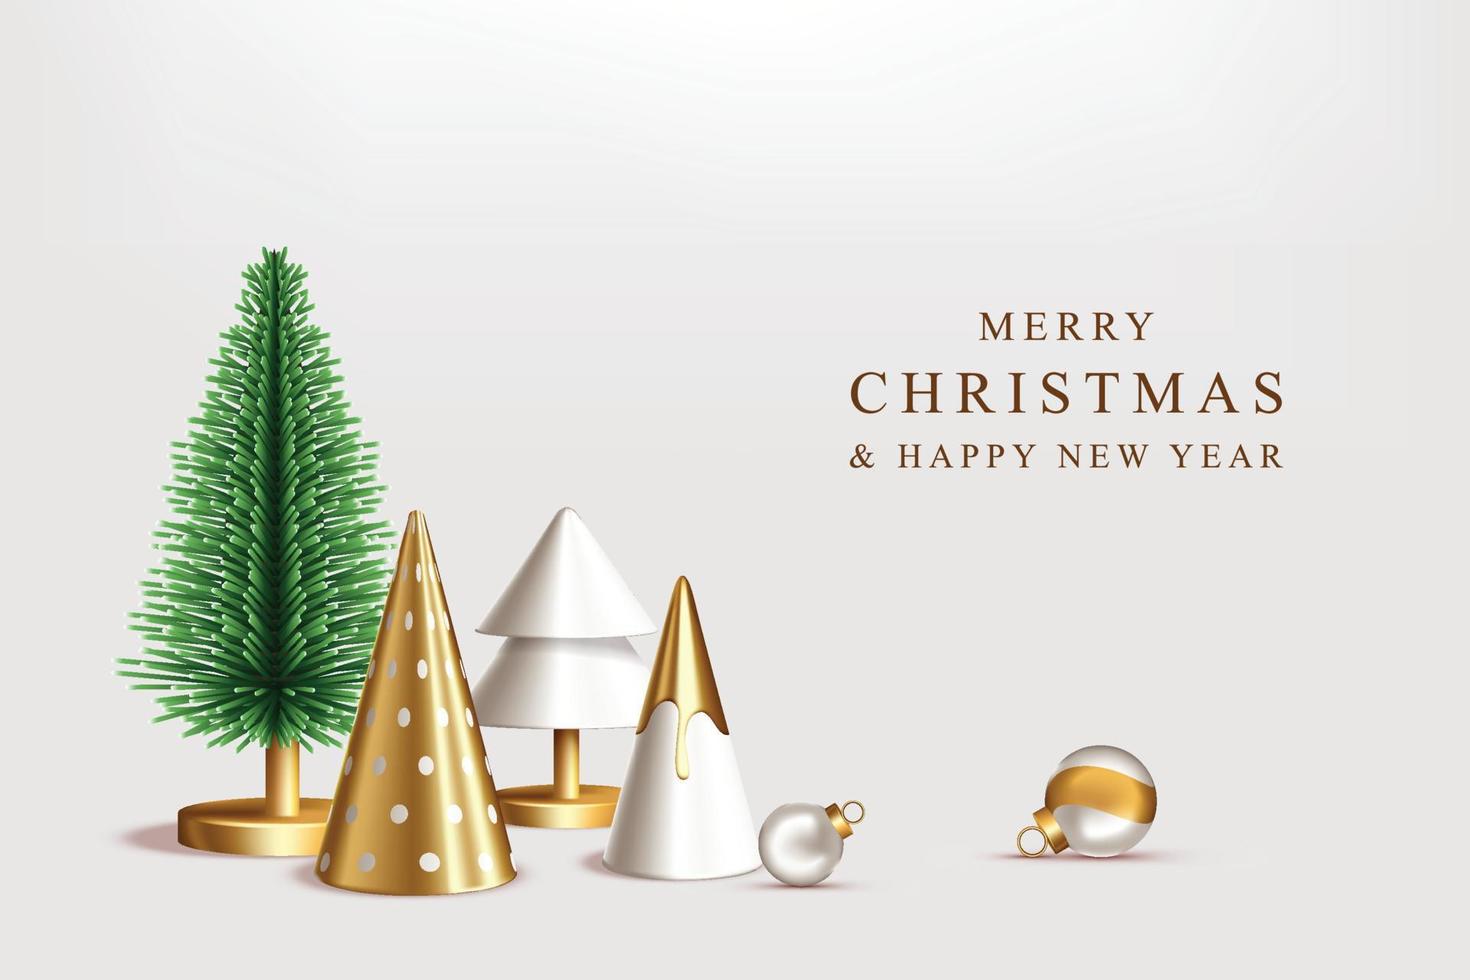 elegantes frohes weihnachtsdesign mit realistischem weihnachtsbaum, dekorativen kugeln, dekorativen kegeln vektor